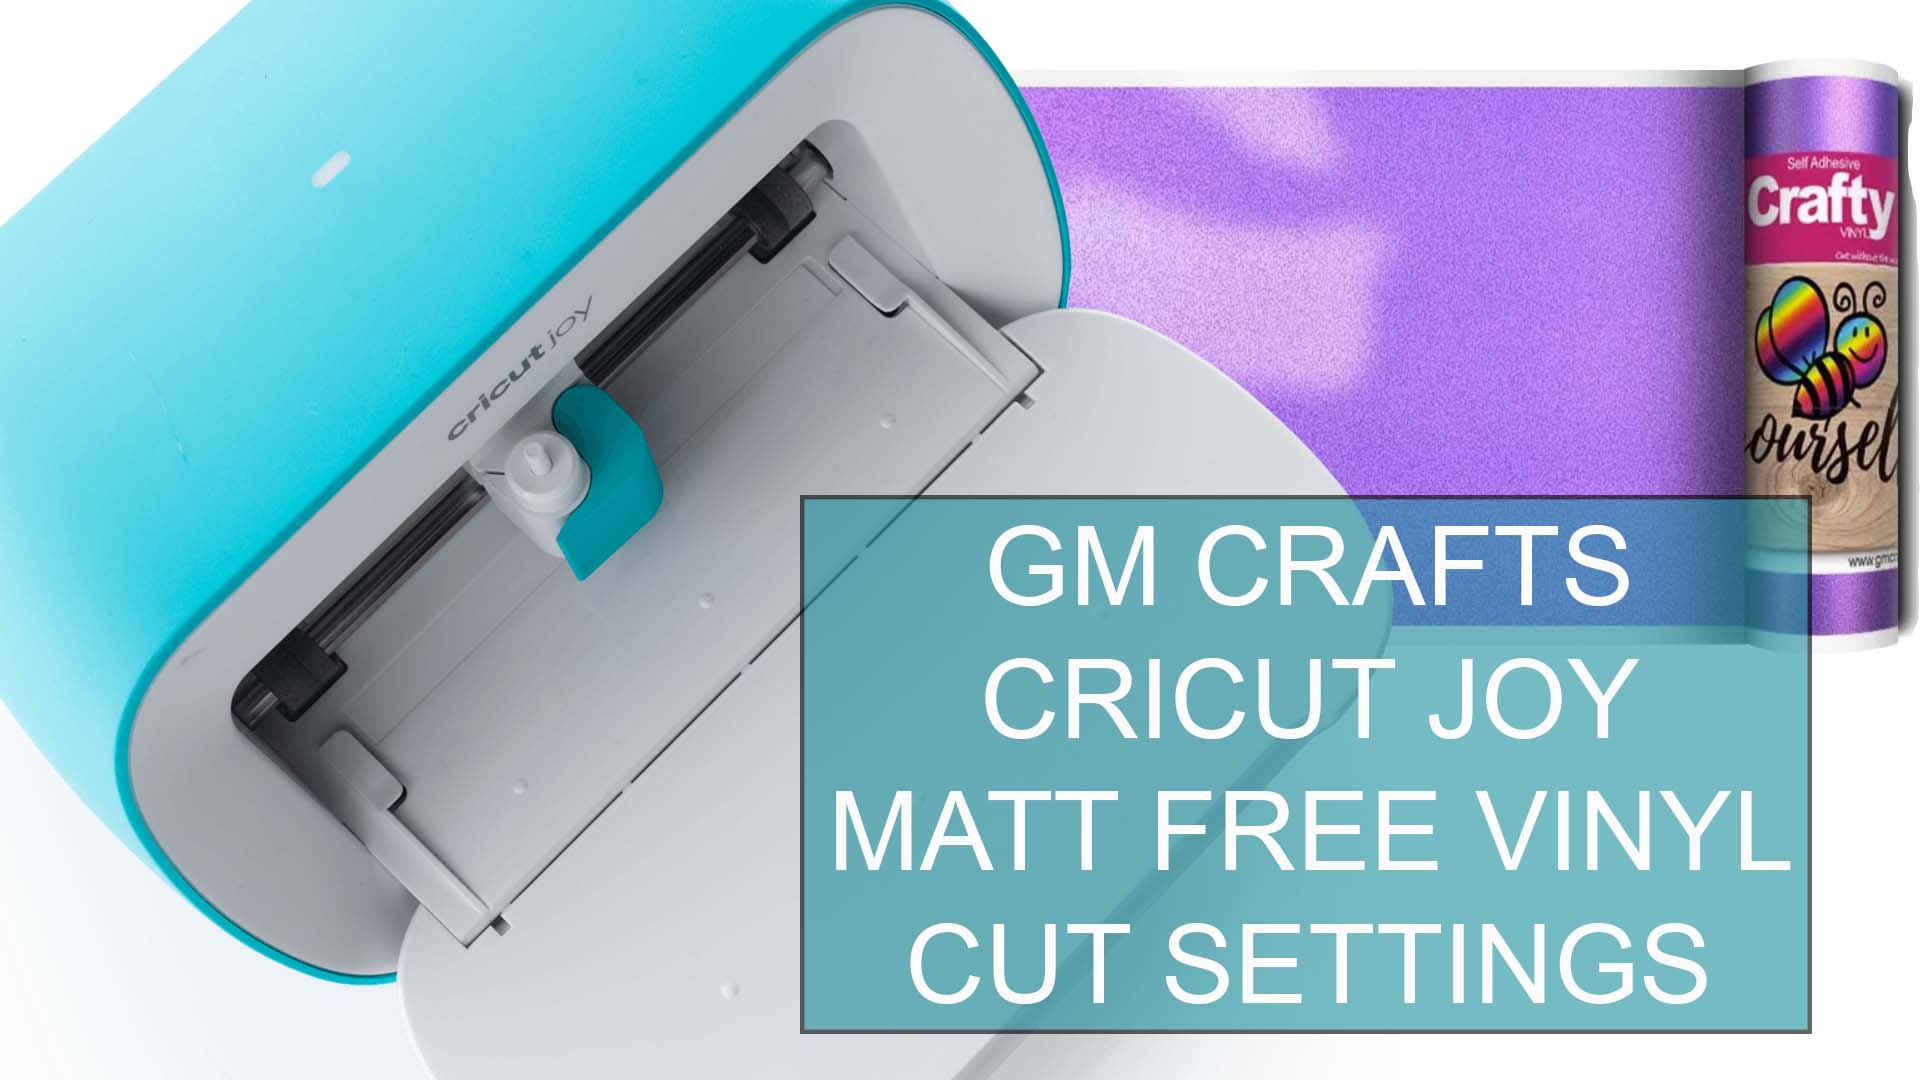 Cricut Joy Matt Free Vinyl Cut Settings - GM Crafts